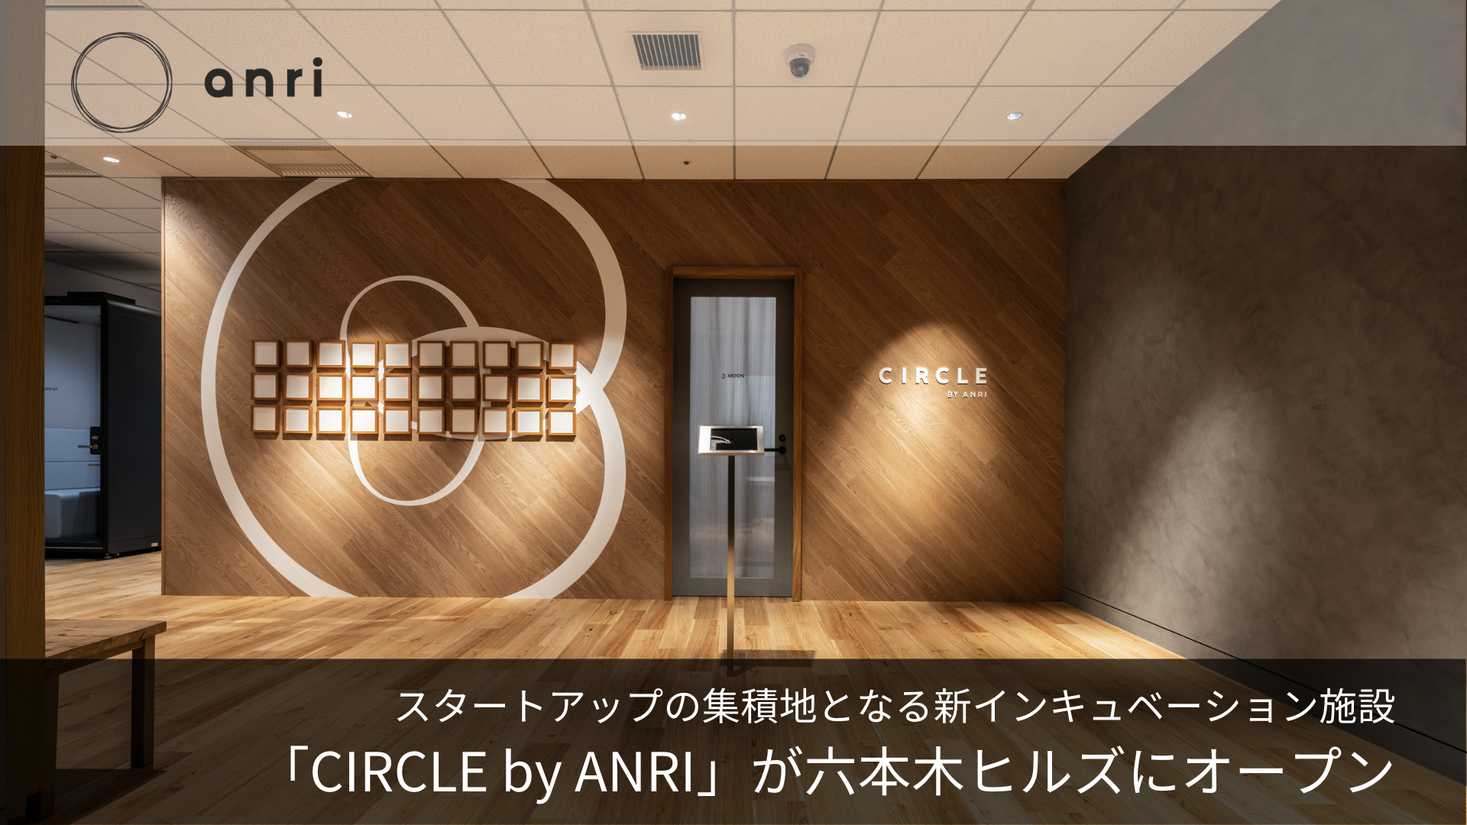 スタートアップの集積地 / 新インキュベーション施設「CIRCLE by ANRI」を六本木ヒルズにオープン